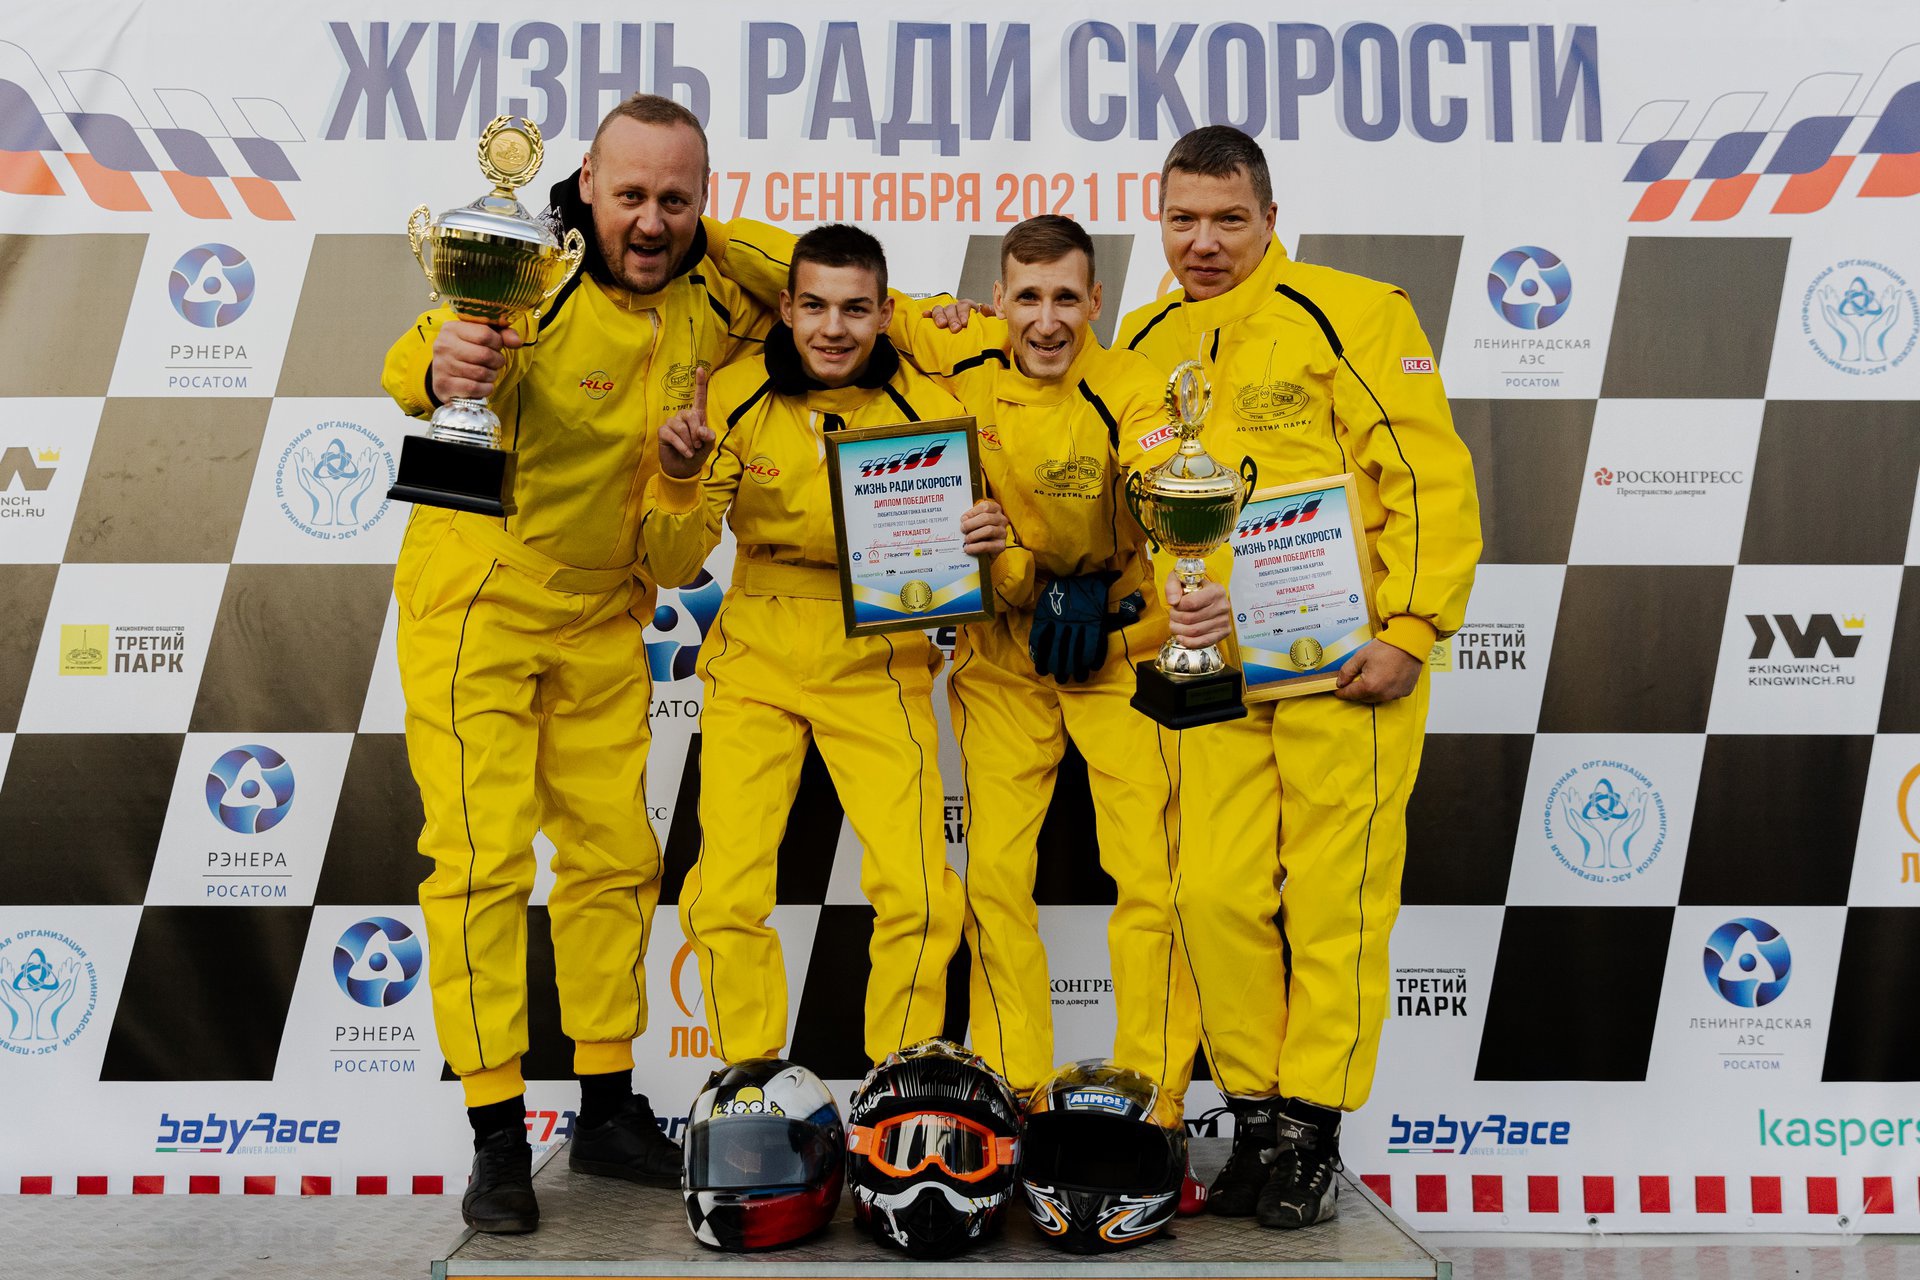 Команда АО «Третий Парк» по картингу одержала победу в турнире «Жизнь ради спорта».